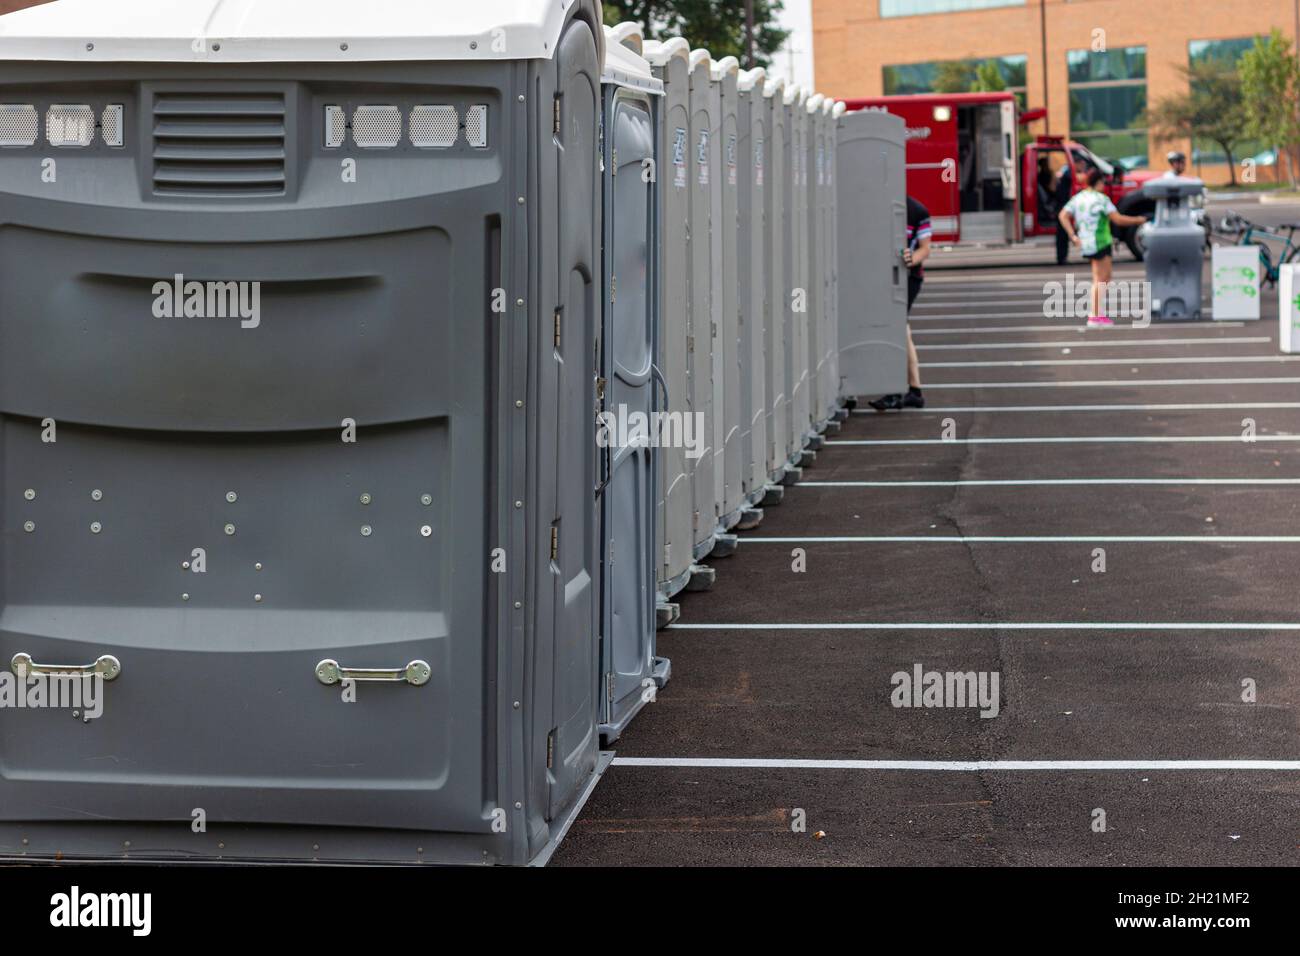 Une gamme de nombreuses toilettes portatives grises sur un parking à utiliser par une foule de personnes lors d'un événement ou d'un festival.Cela permet de garantir l'accès aux personnes Banque D'Images